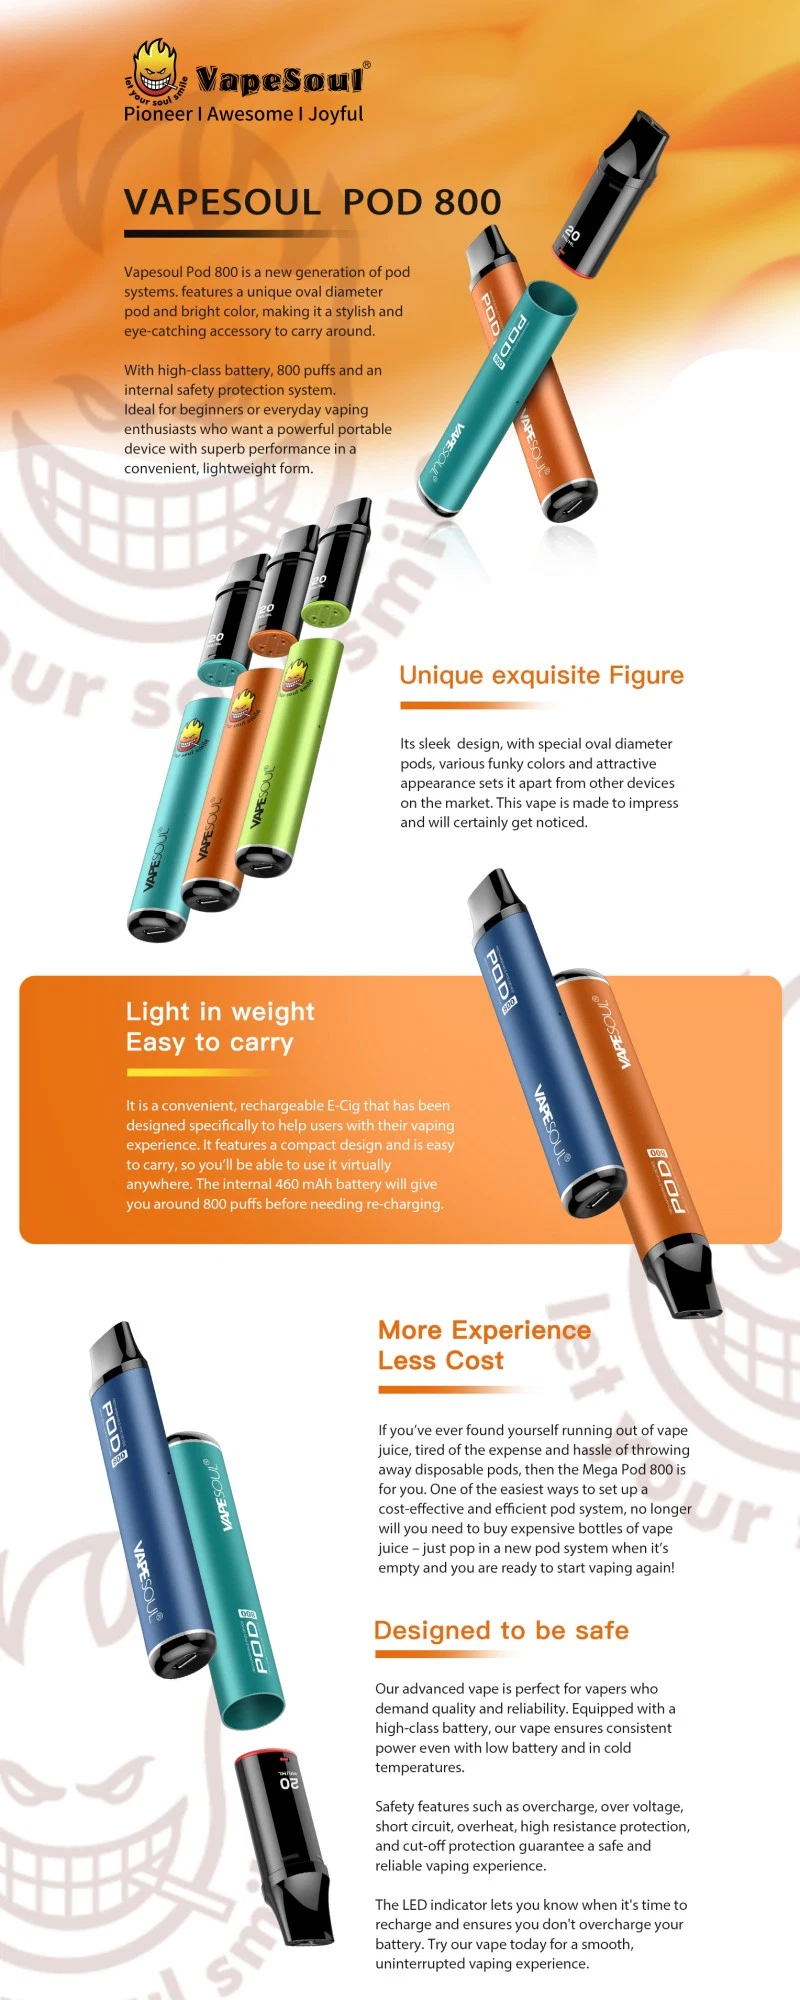 Vapesoul Disaposable Vape E Cigarette Starter Kits 0%/2%/5% Nicotine Wholesale I Vape 600 800puffs Pen Style Vaporizer Hookah